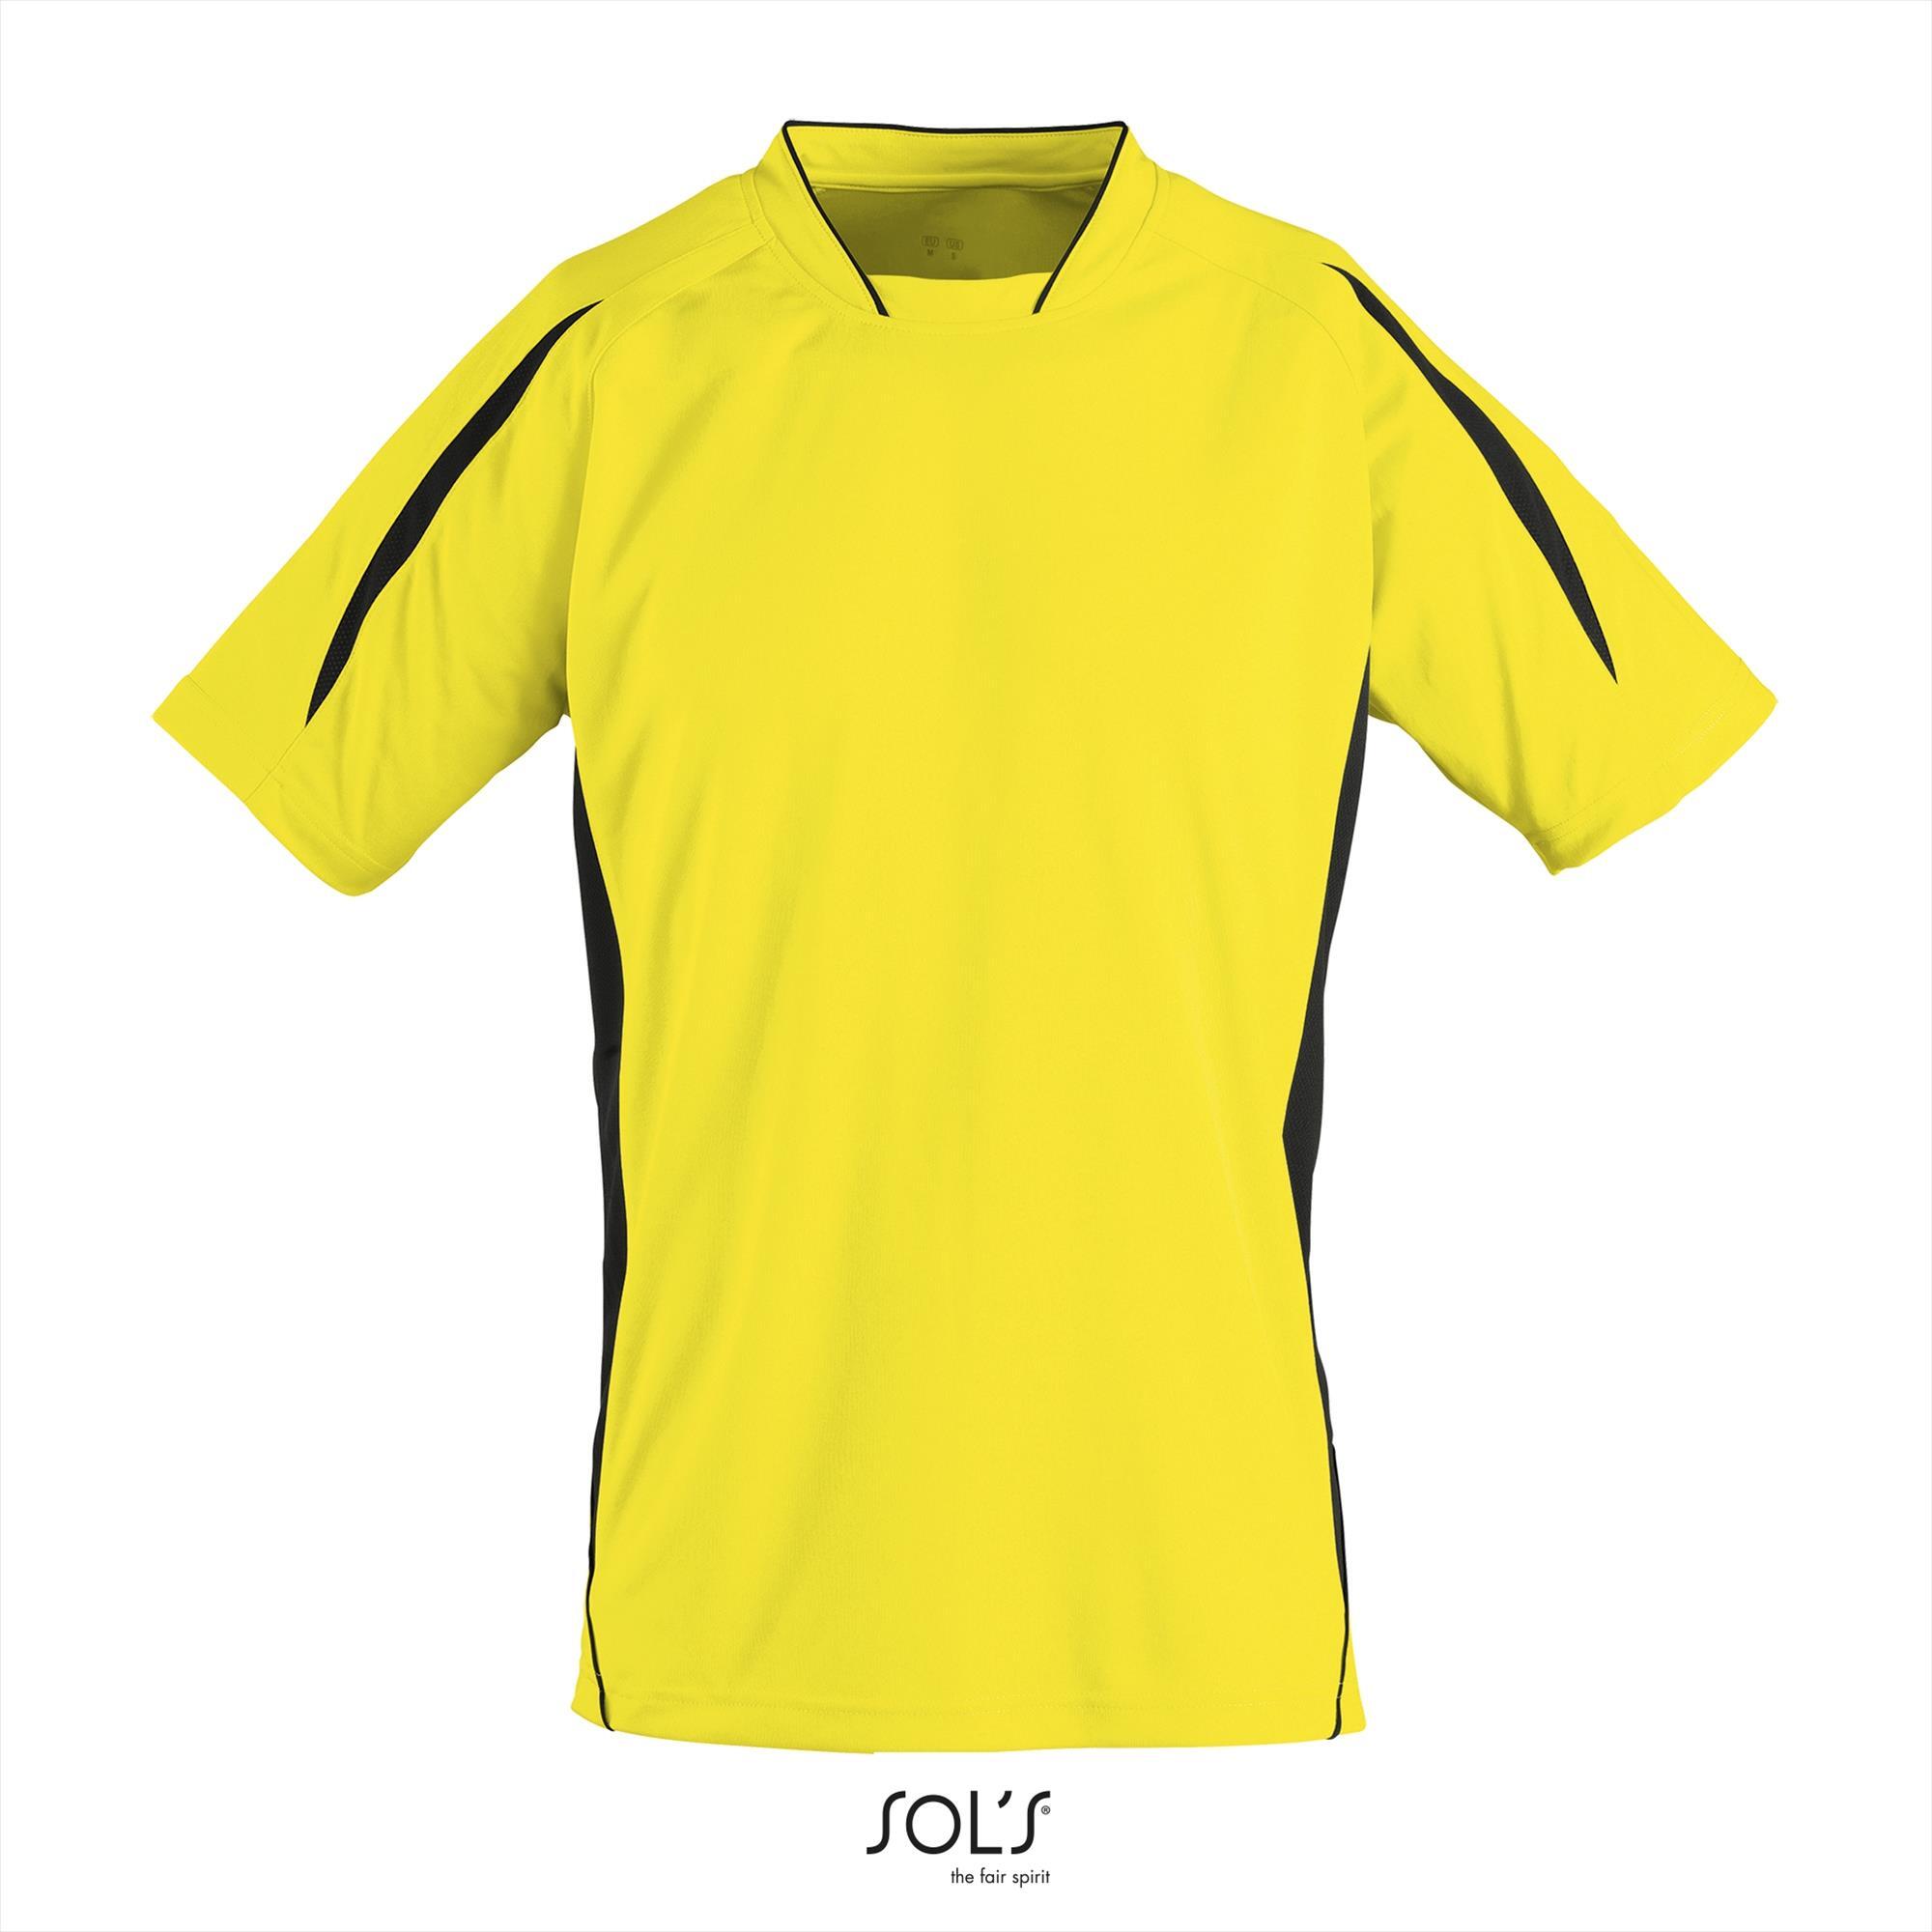 Twee kleurig sportshirt voor heren geel met zwart